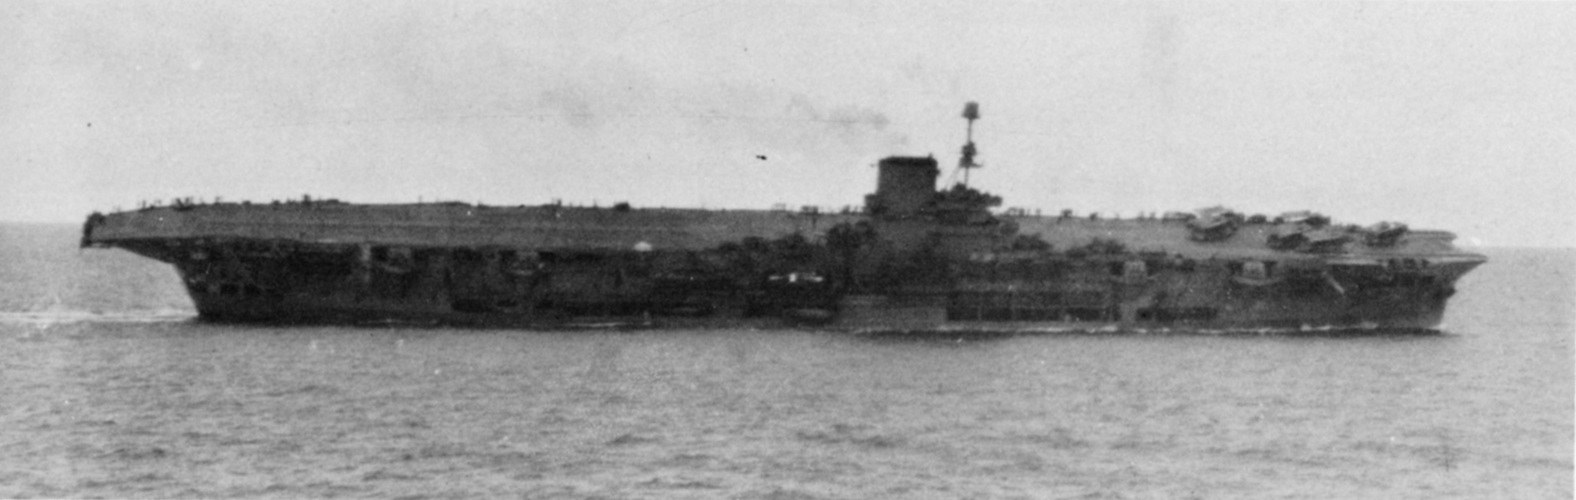 Ark Royal torpedoed & listing 13.11.41.JPG